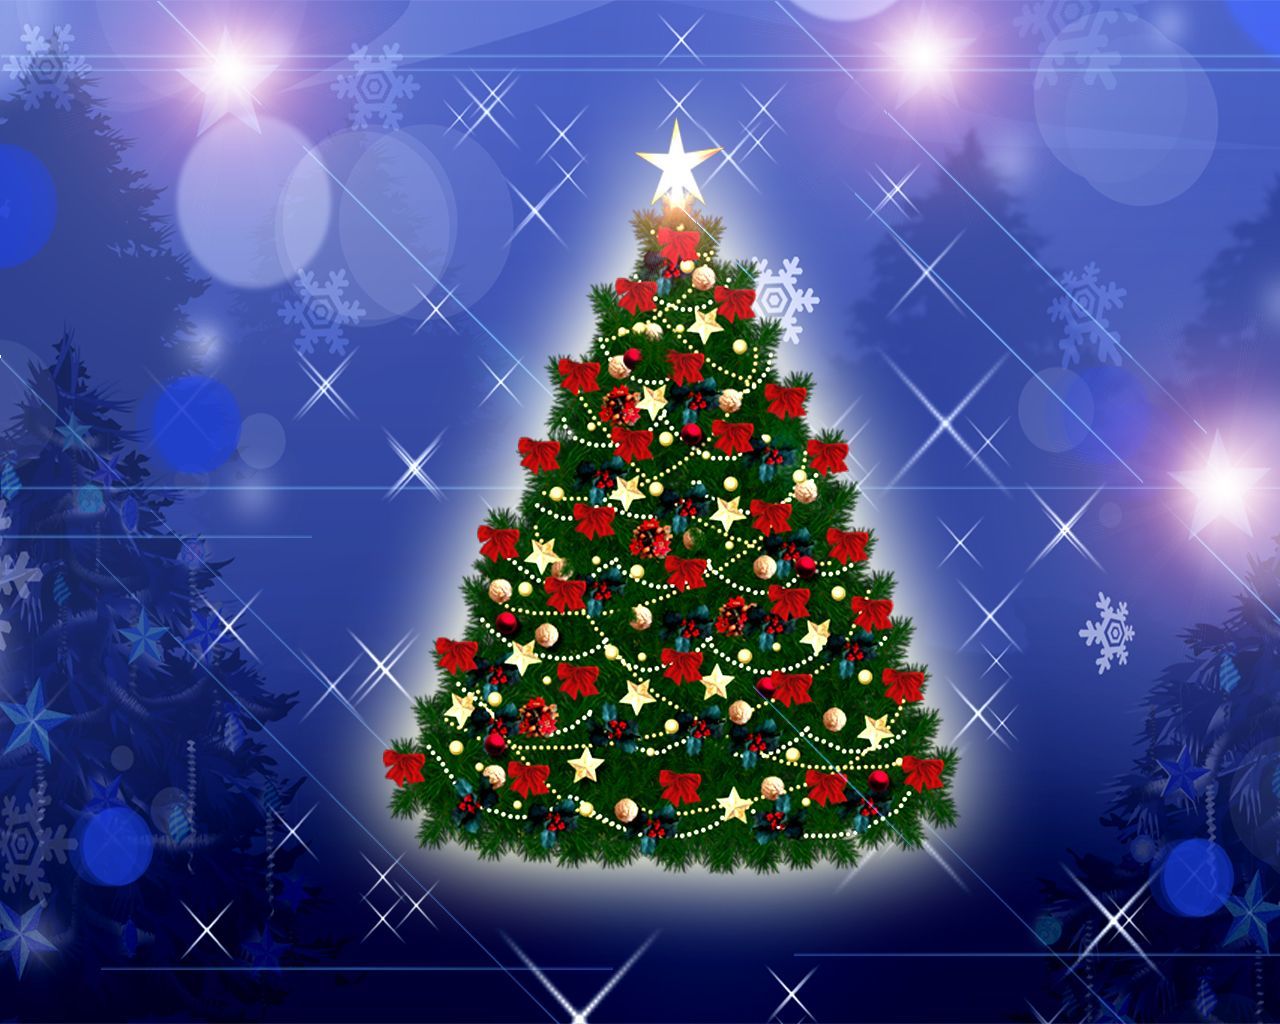 Free Christmas Wallpaper. Christmas tree image, Christmas tree background, Christmas wallpaper free